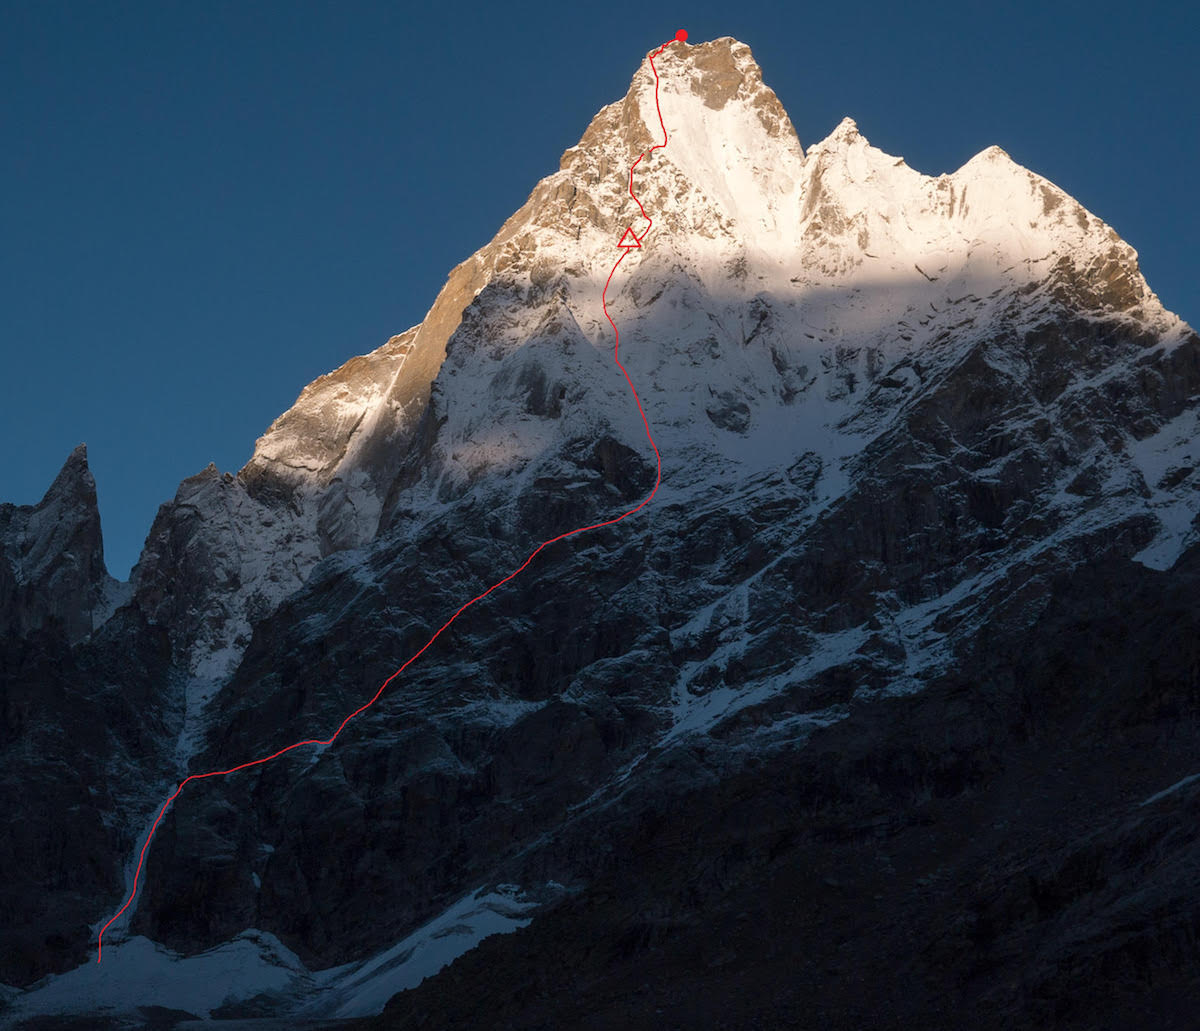 Маршрут  All Izz Well (VI WI5 M6, 1500m) по северо-восточной стене горы Киштвар (Cerro Kishtwar) высотой 6155 метров, что расположена в Индийских Гималаях. Фото Genki Narumi